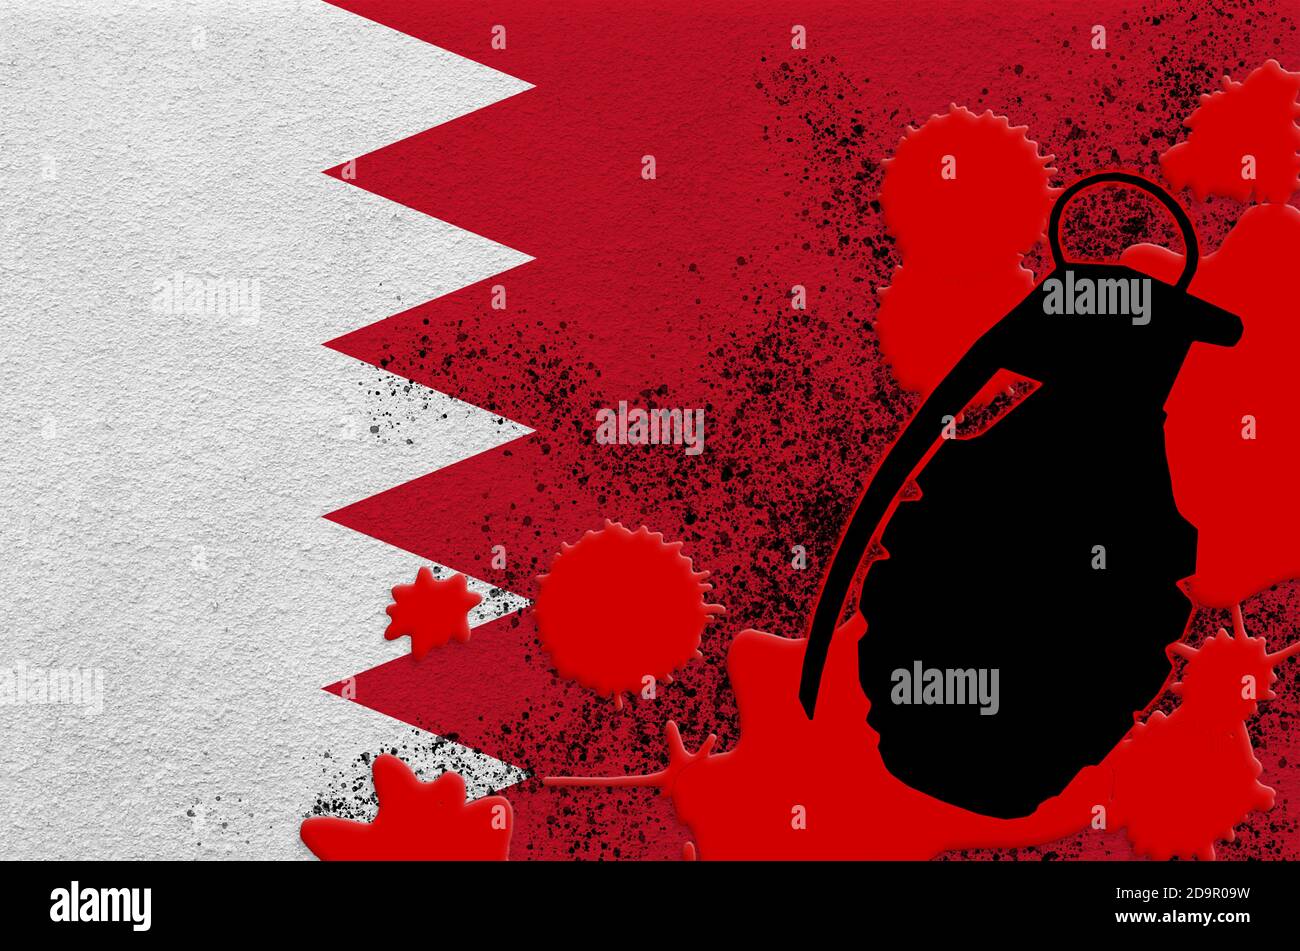 Drapeau de Bahreïn et grenade à frag MK2 dans du sang rouge. Concept d'attaque terroriste ou d'opérations militaires avec un résultat mortel. Arme projectile dangereuse usag Banque D'Images